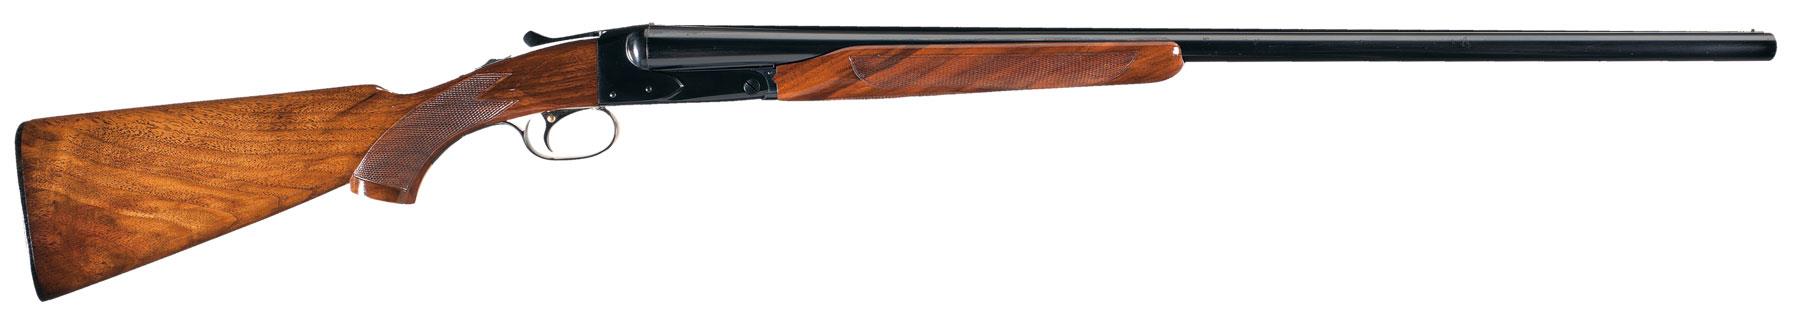 Outstanding Winchester Model 21 Double Barrel Shotgun.